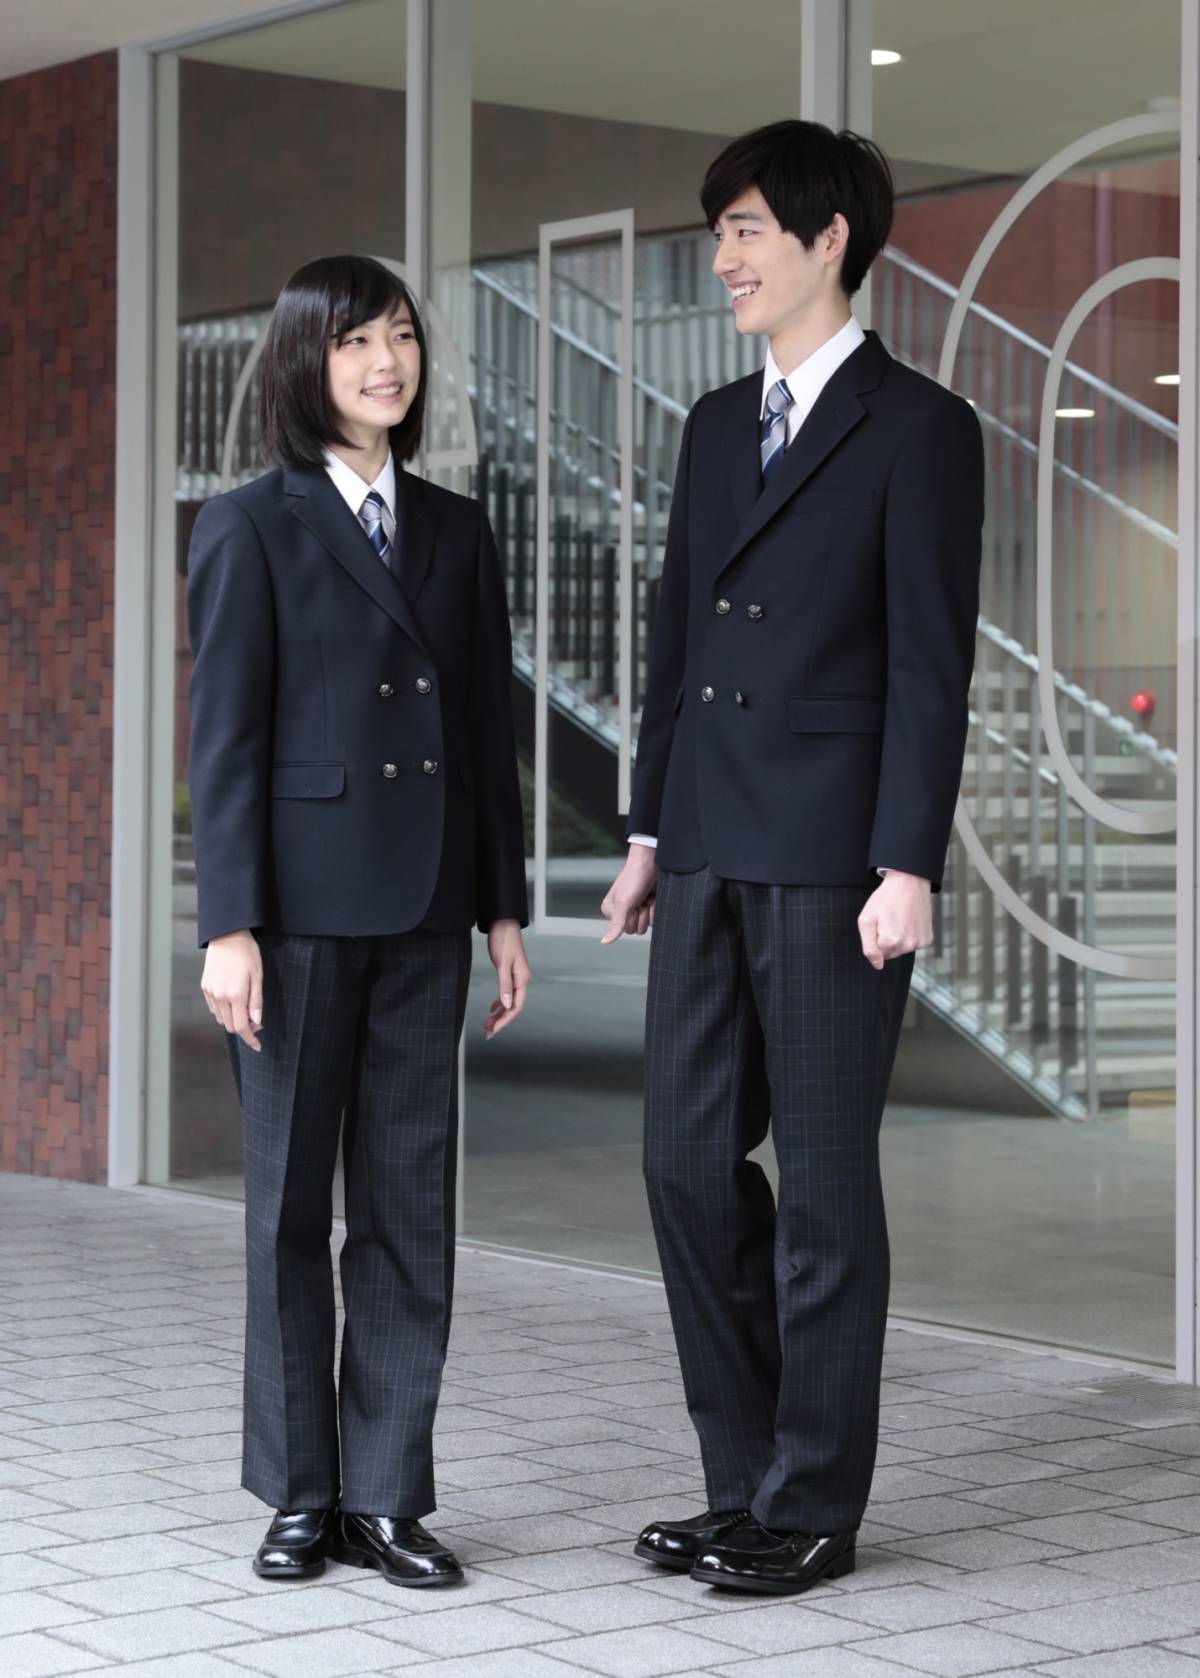 Giappone, le scuole scelgono uniformi unisex